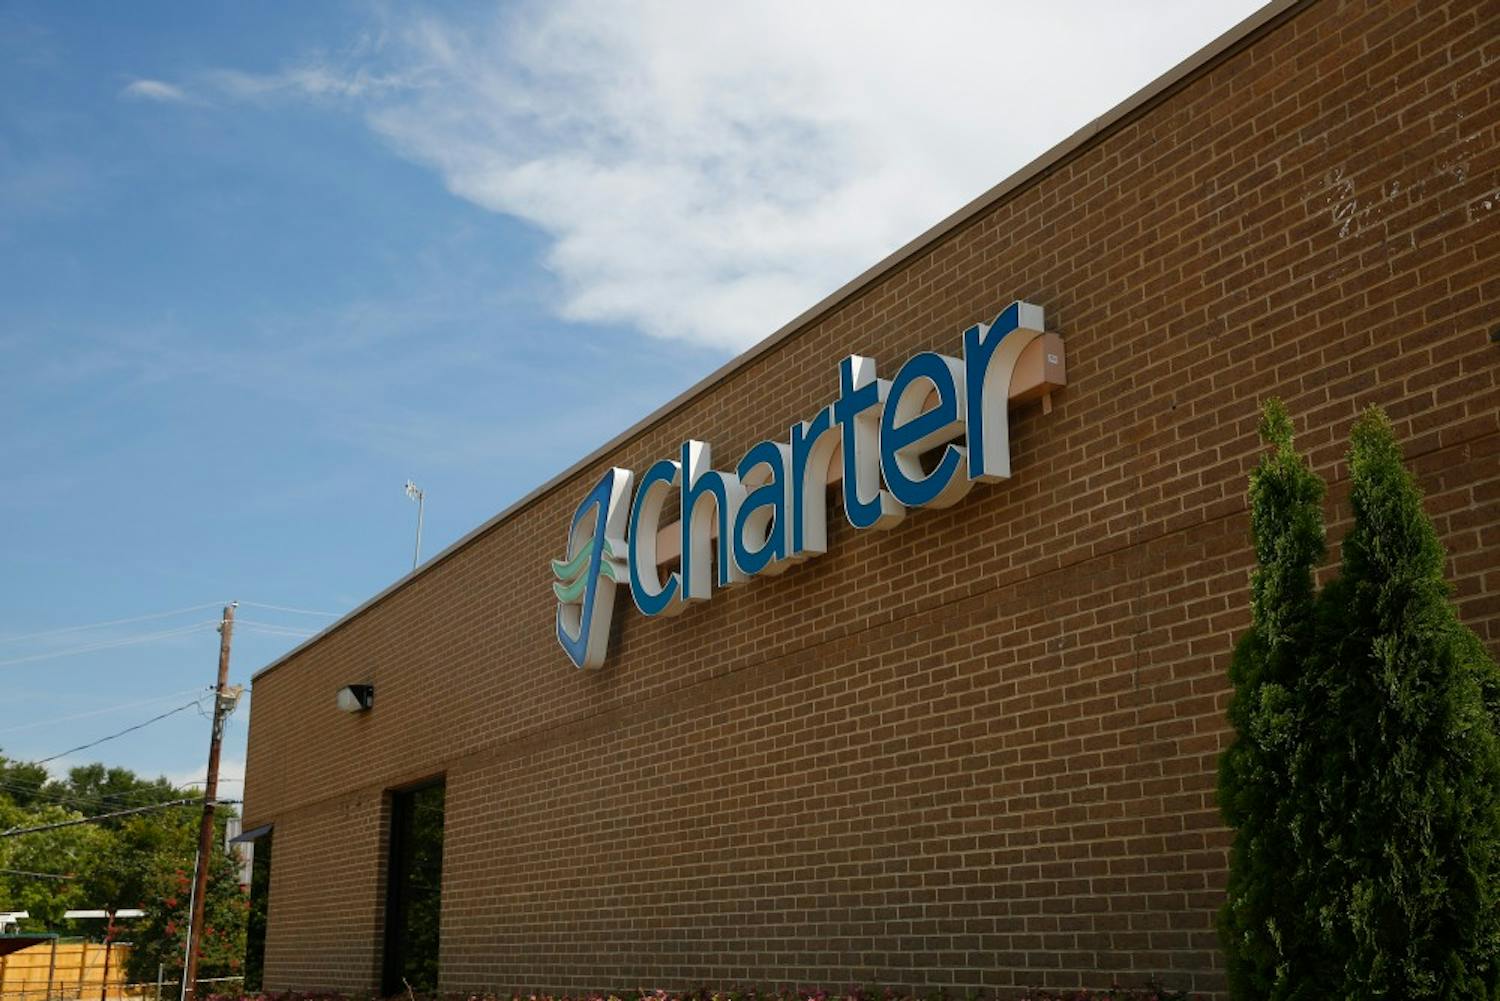 Charter's building near the Auburn Mall on Friday, Aug. 19, 2016 in Auburn, Ala.